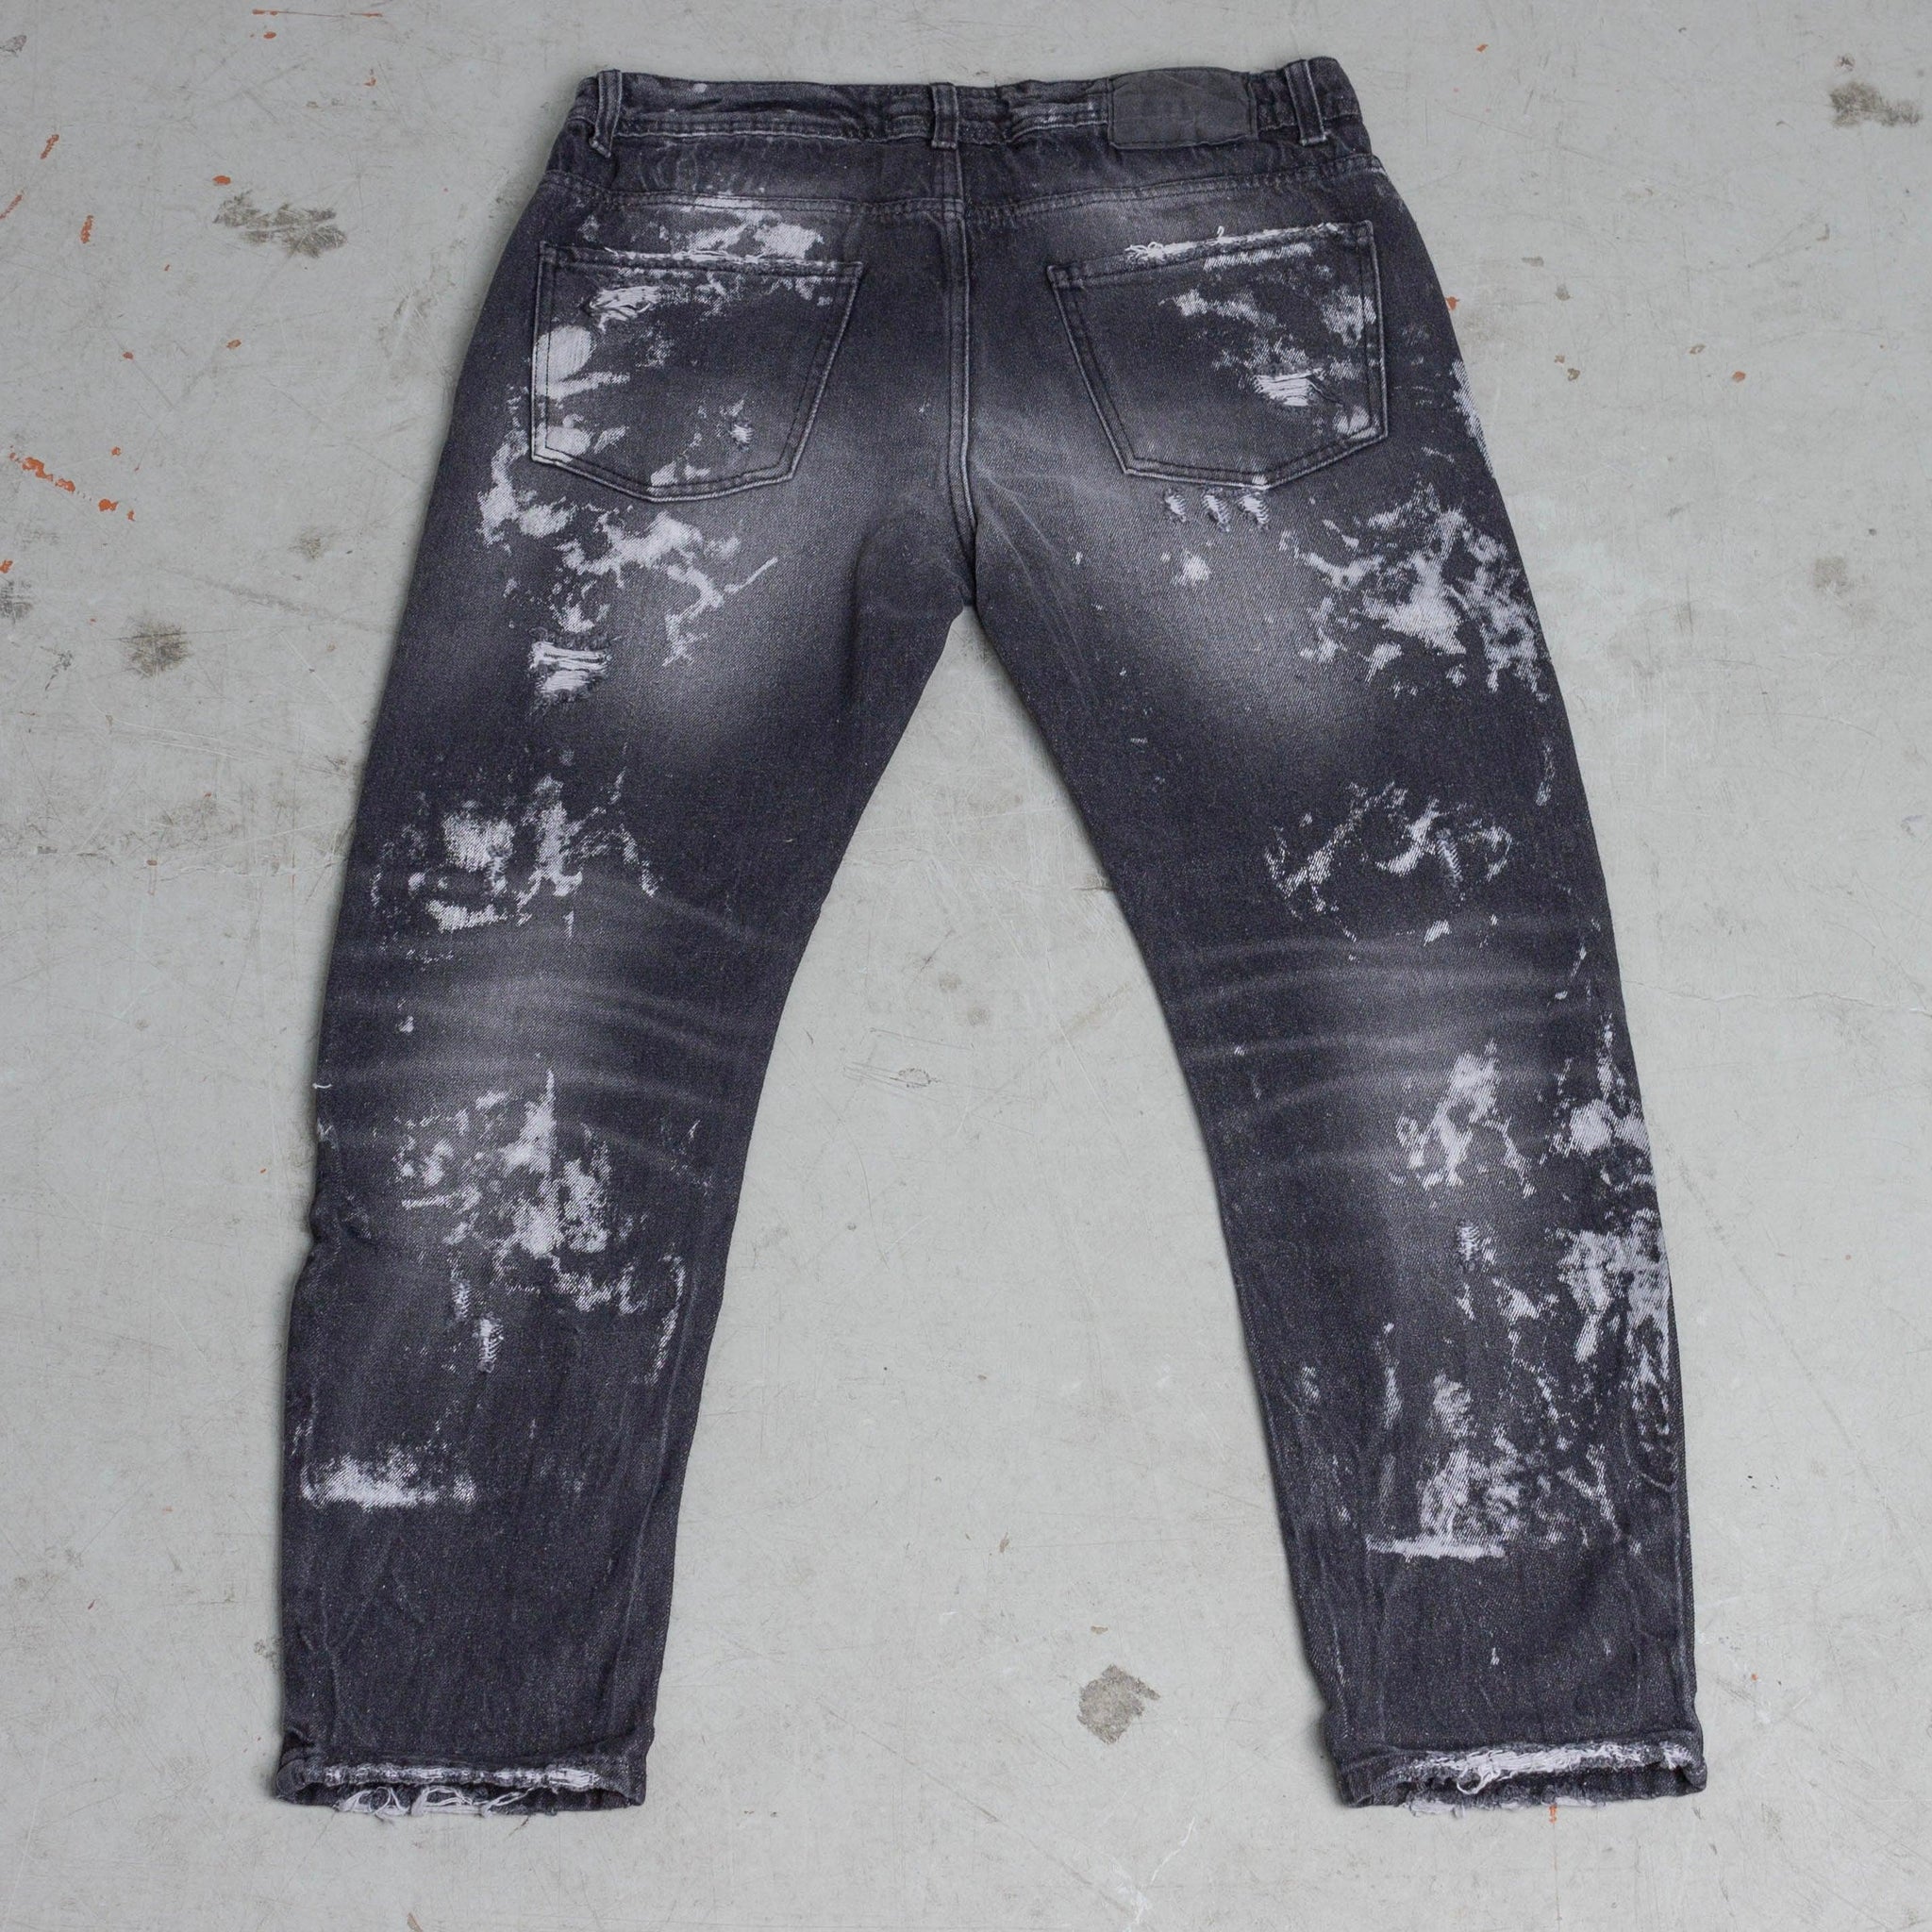 Jeans grey distressed splattered - FRANKIE HO